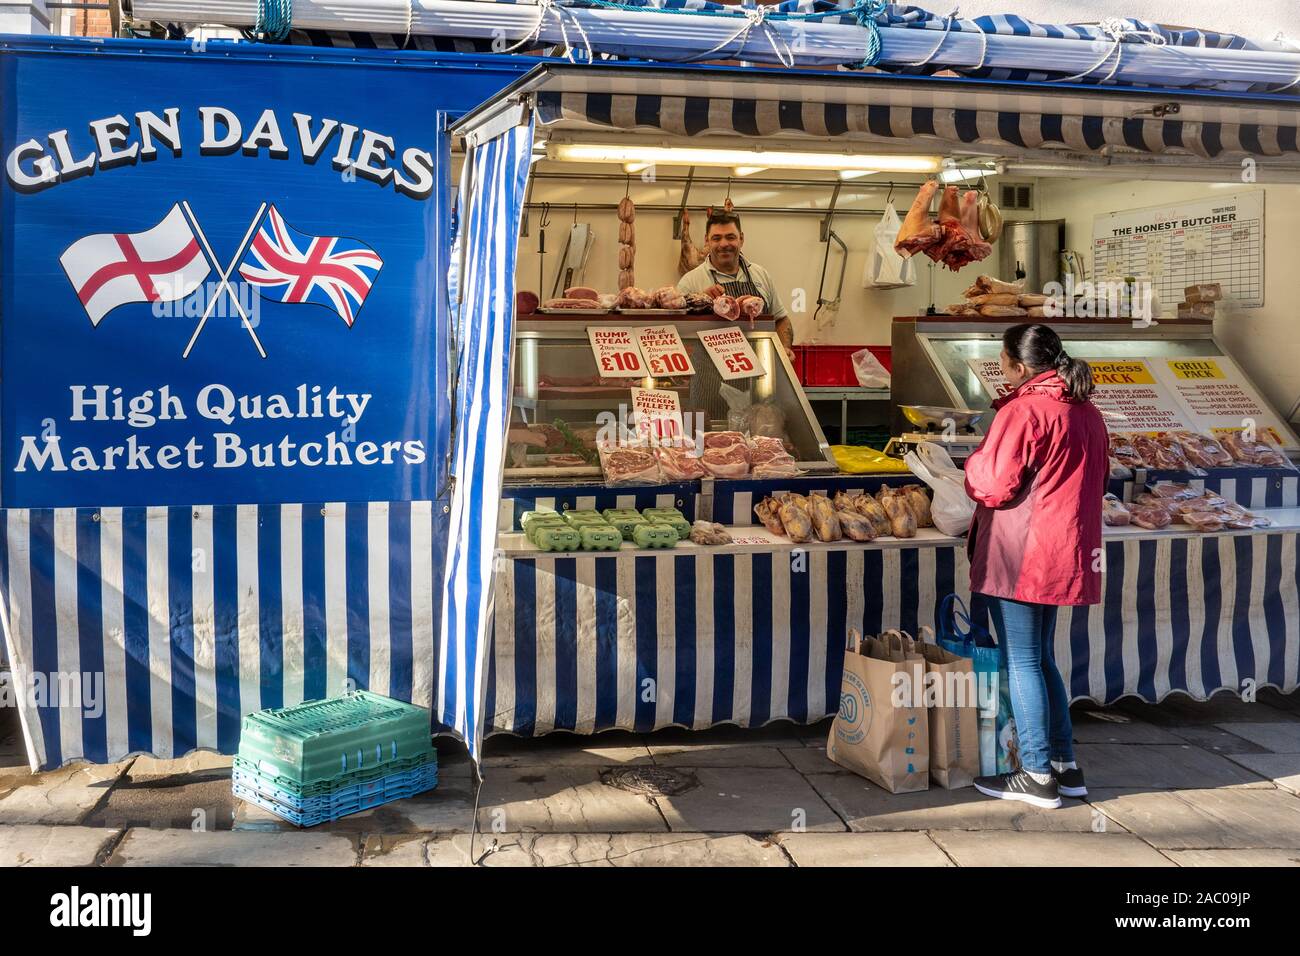 Glen Davies, puesto en el mercado, alta calidad de carnicero en el mercado vendiendo carne y otros productos, UK Foto de stock